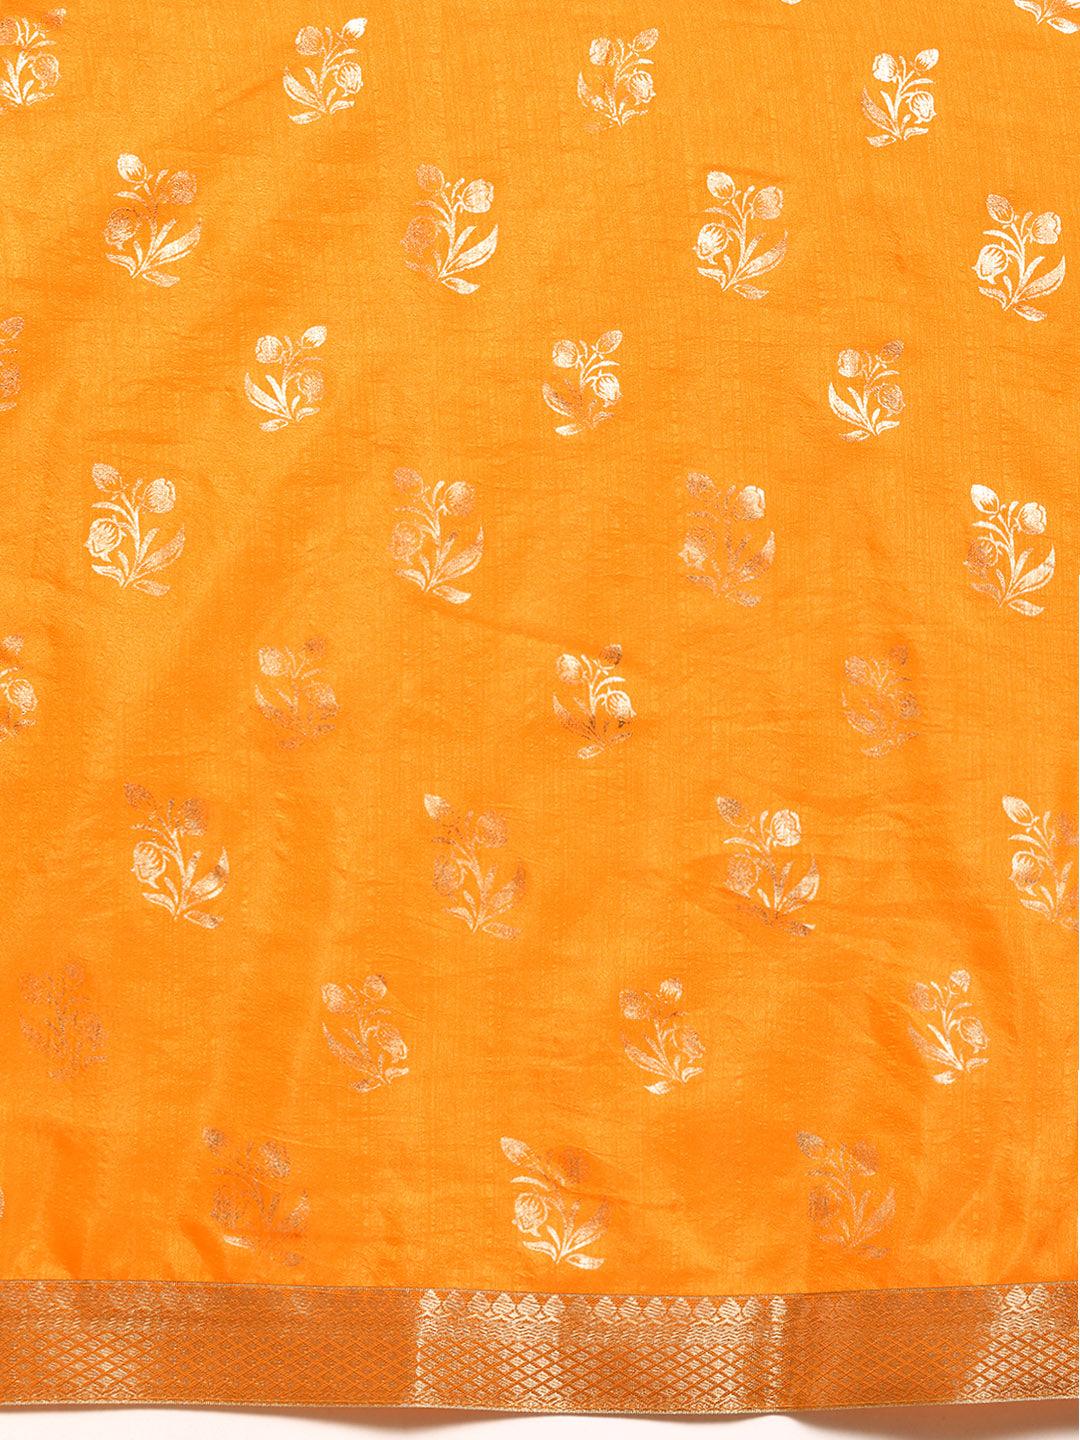 Yellow Printed Silk Blend Saree - Libas